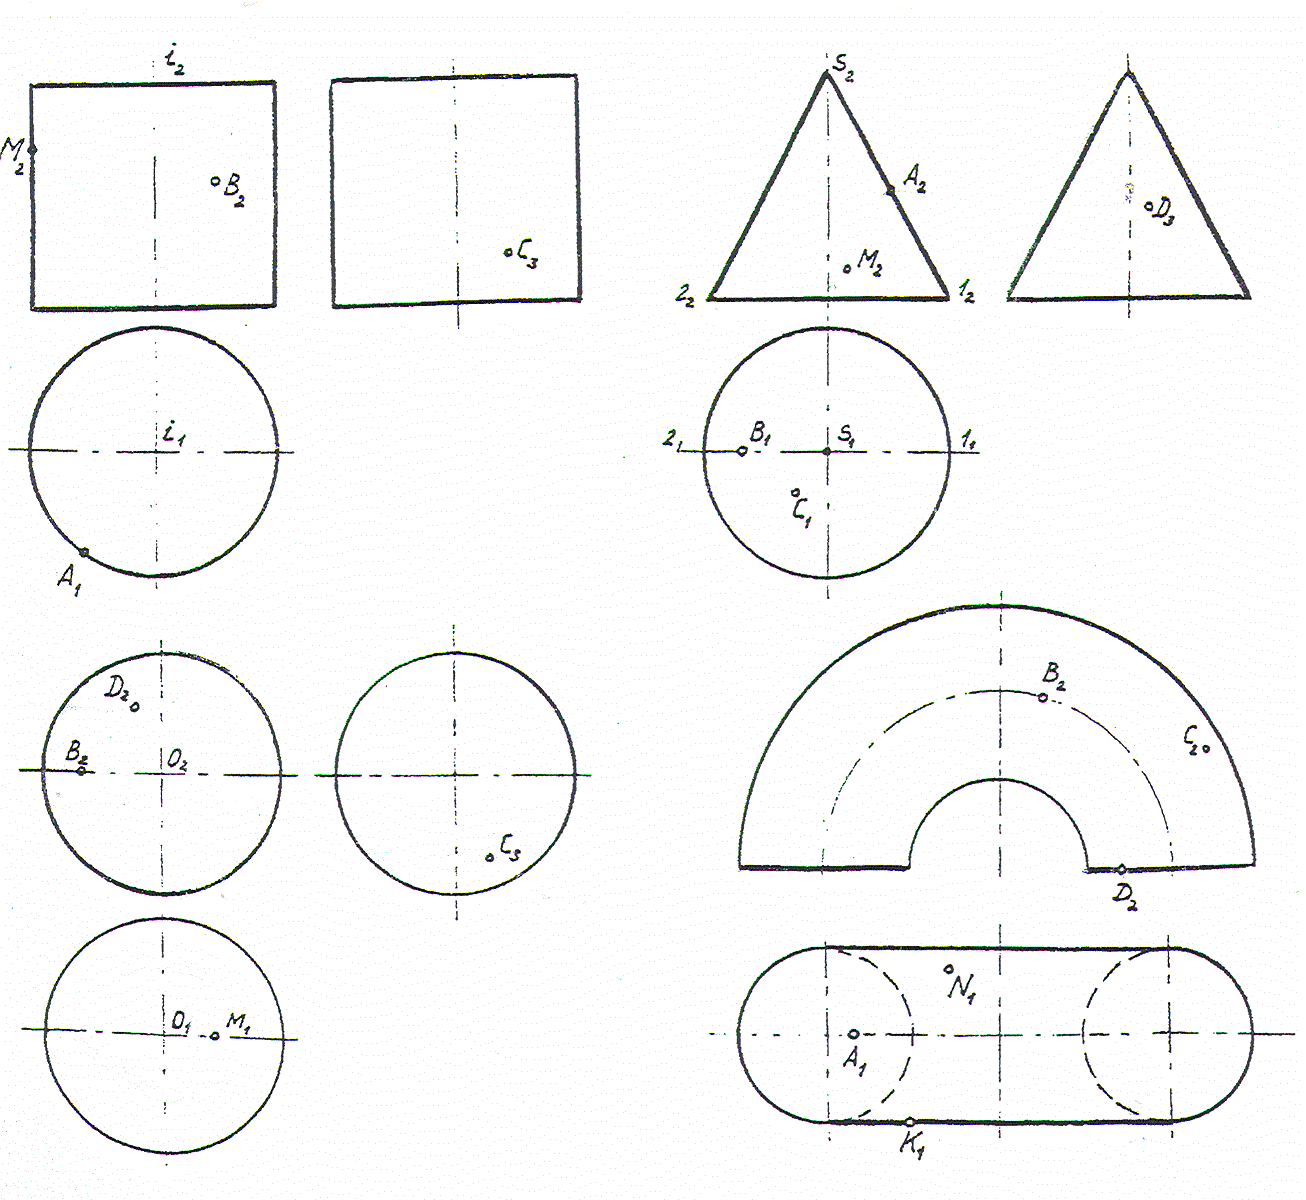 Построение недостающей проекции точки на поверхности вращения изображенной на рисунке может быть